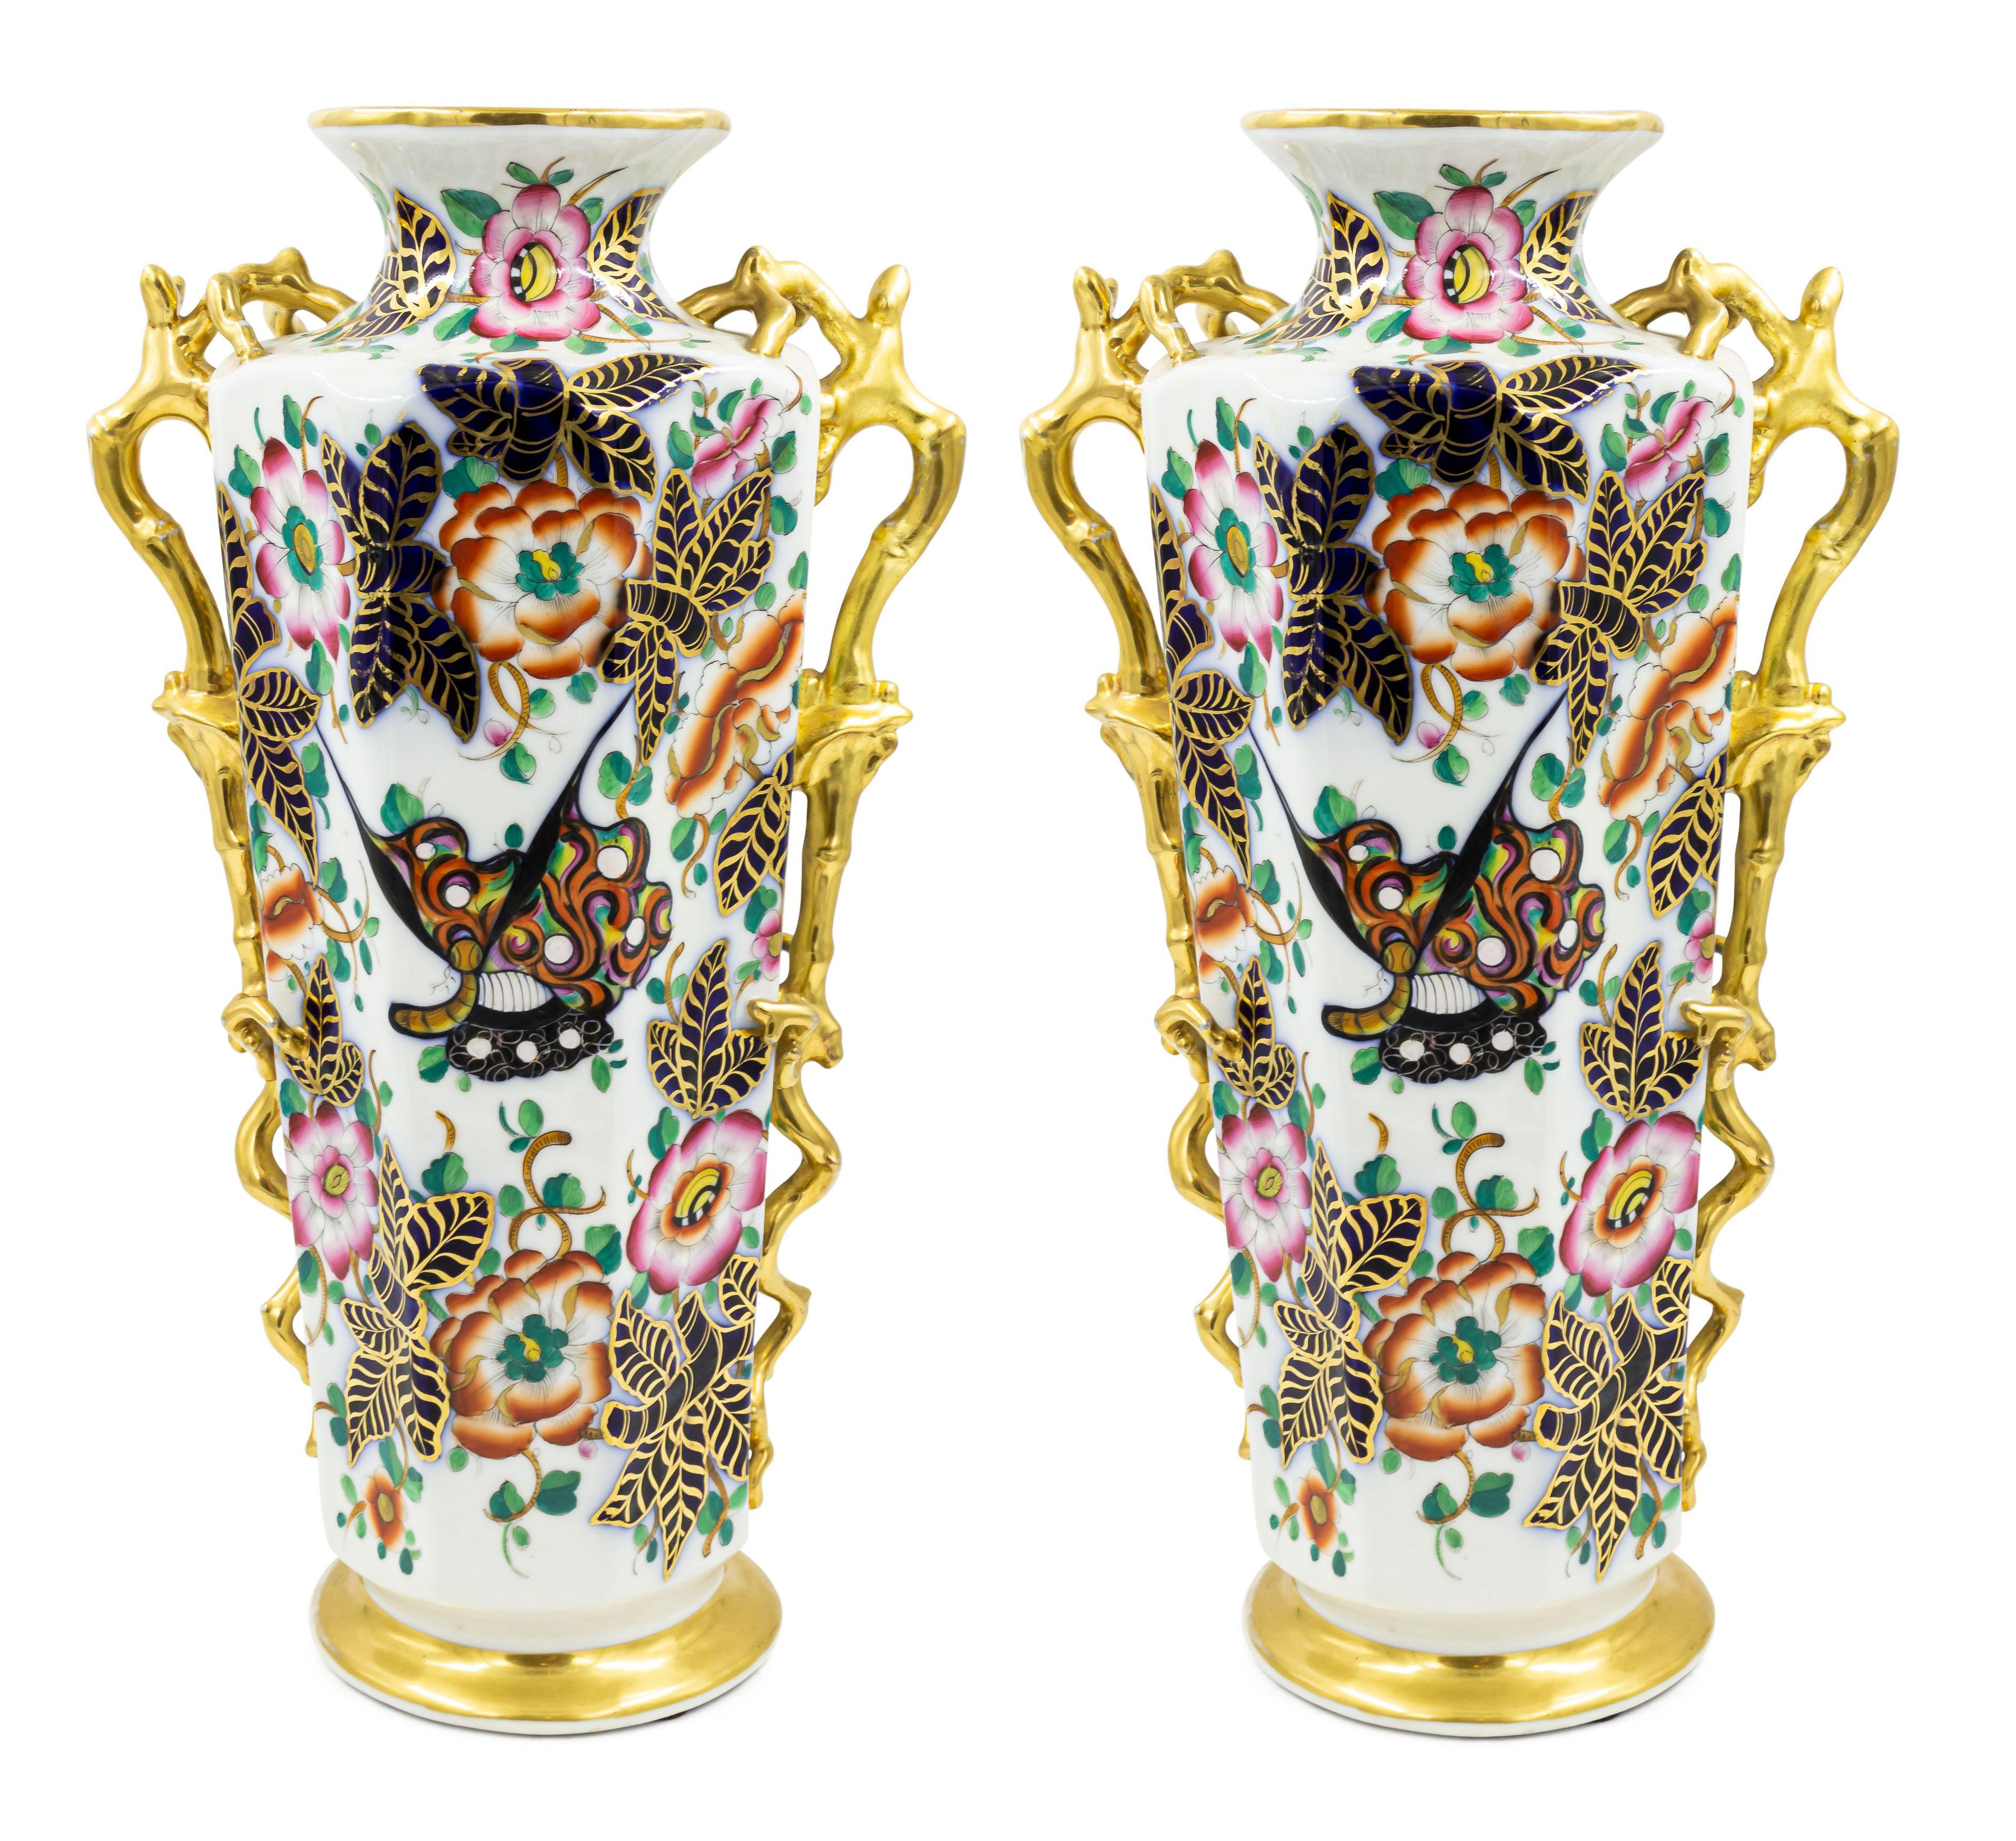 Paire de vases octogonaux en porcelaine anglaise de l'époque victorienne (probablement de Chelsea), de couleur bleu cobalt et blanc, avec des figures peintes de style chinois et garnis de fausses poignées en brindille dorée. (PRIX PAR PAIRE).
 